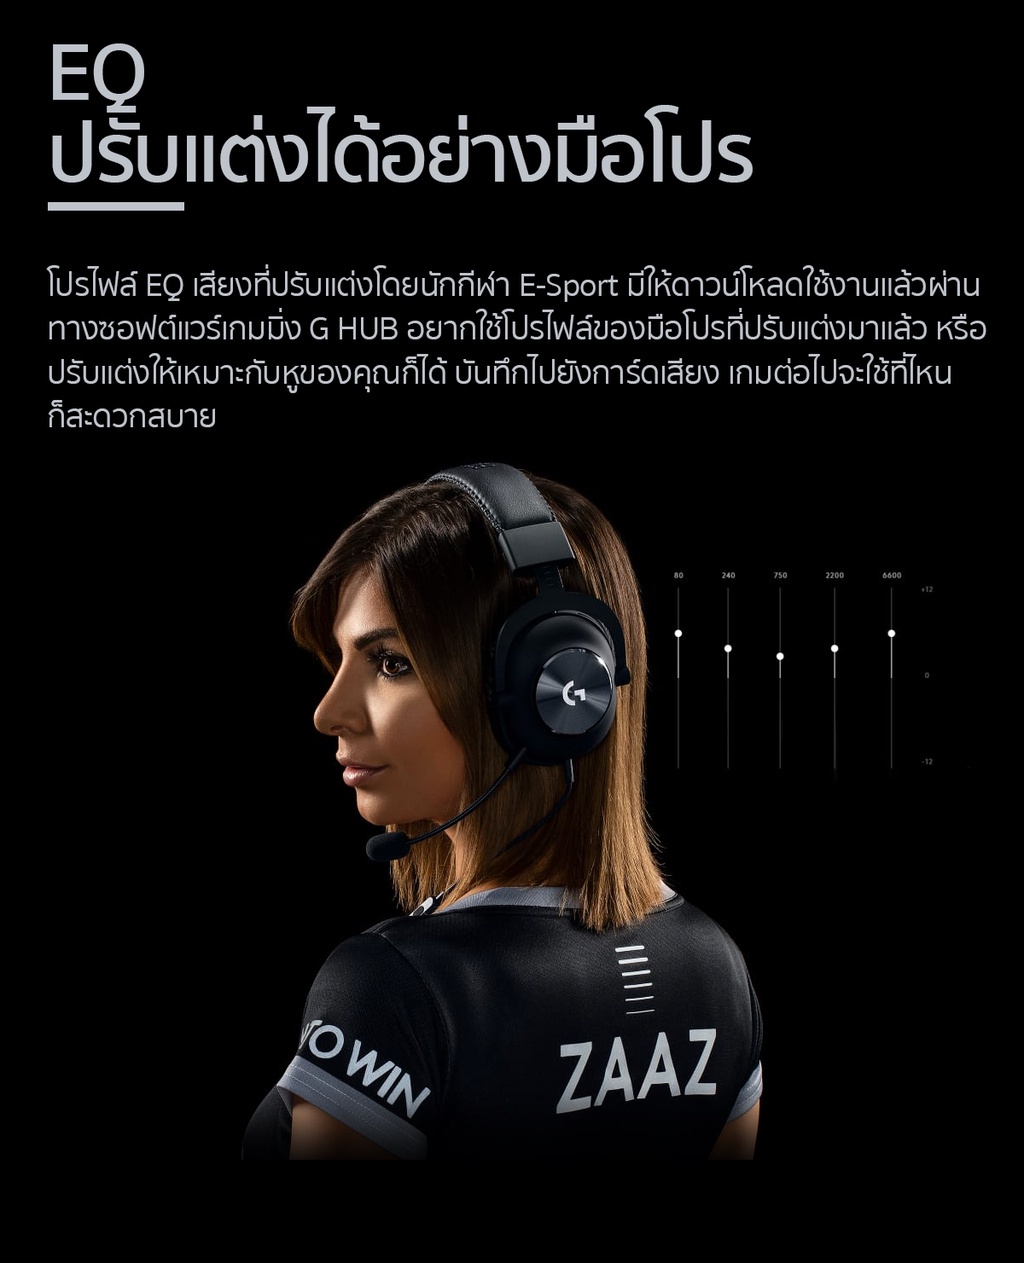 ภาพประกอบของ Logitech G Pro Gaming Headset with microphone, PRO-G 50 mm Audio Drivers ( หูฟังเกมมิ่งพร้อมไมค์ เกรดมือโปร)